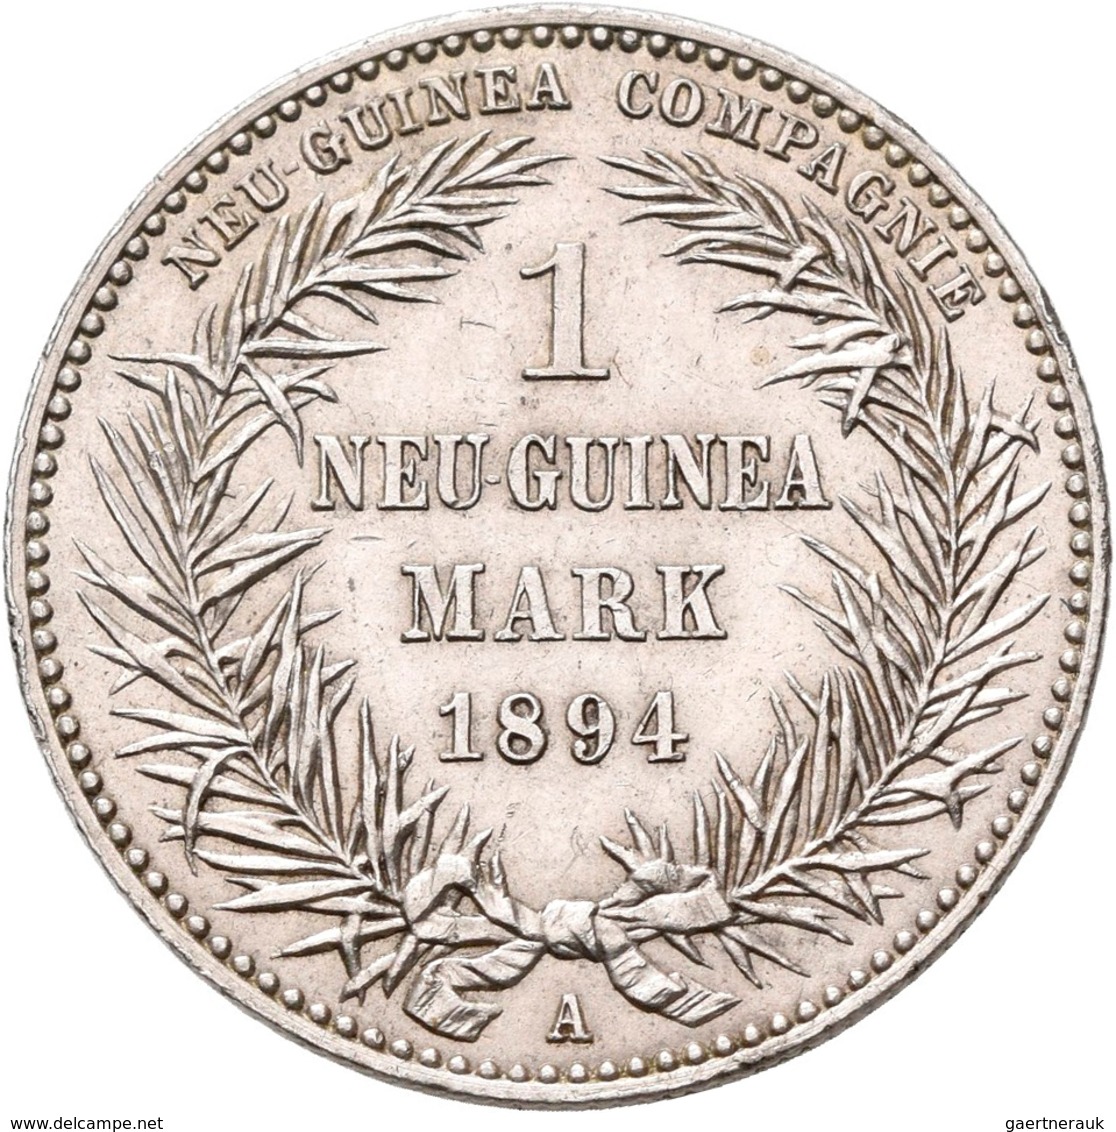 Deutsch-Neuguinea: 1 Neu-Guinea Mark 1894 A, Paradiesvogel, Jaeger 705, Kleine Kratzer, Vorzüglich. - Duits Nieuw-Guinea